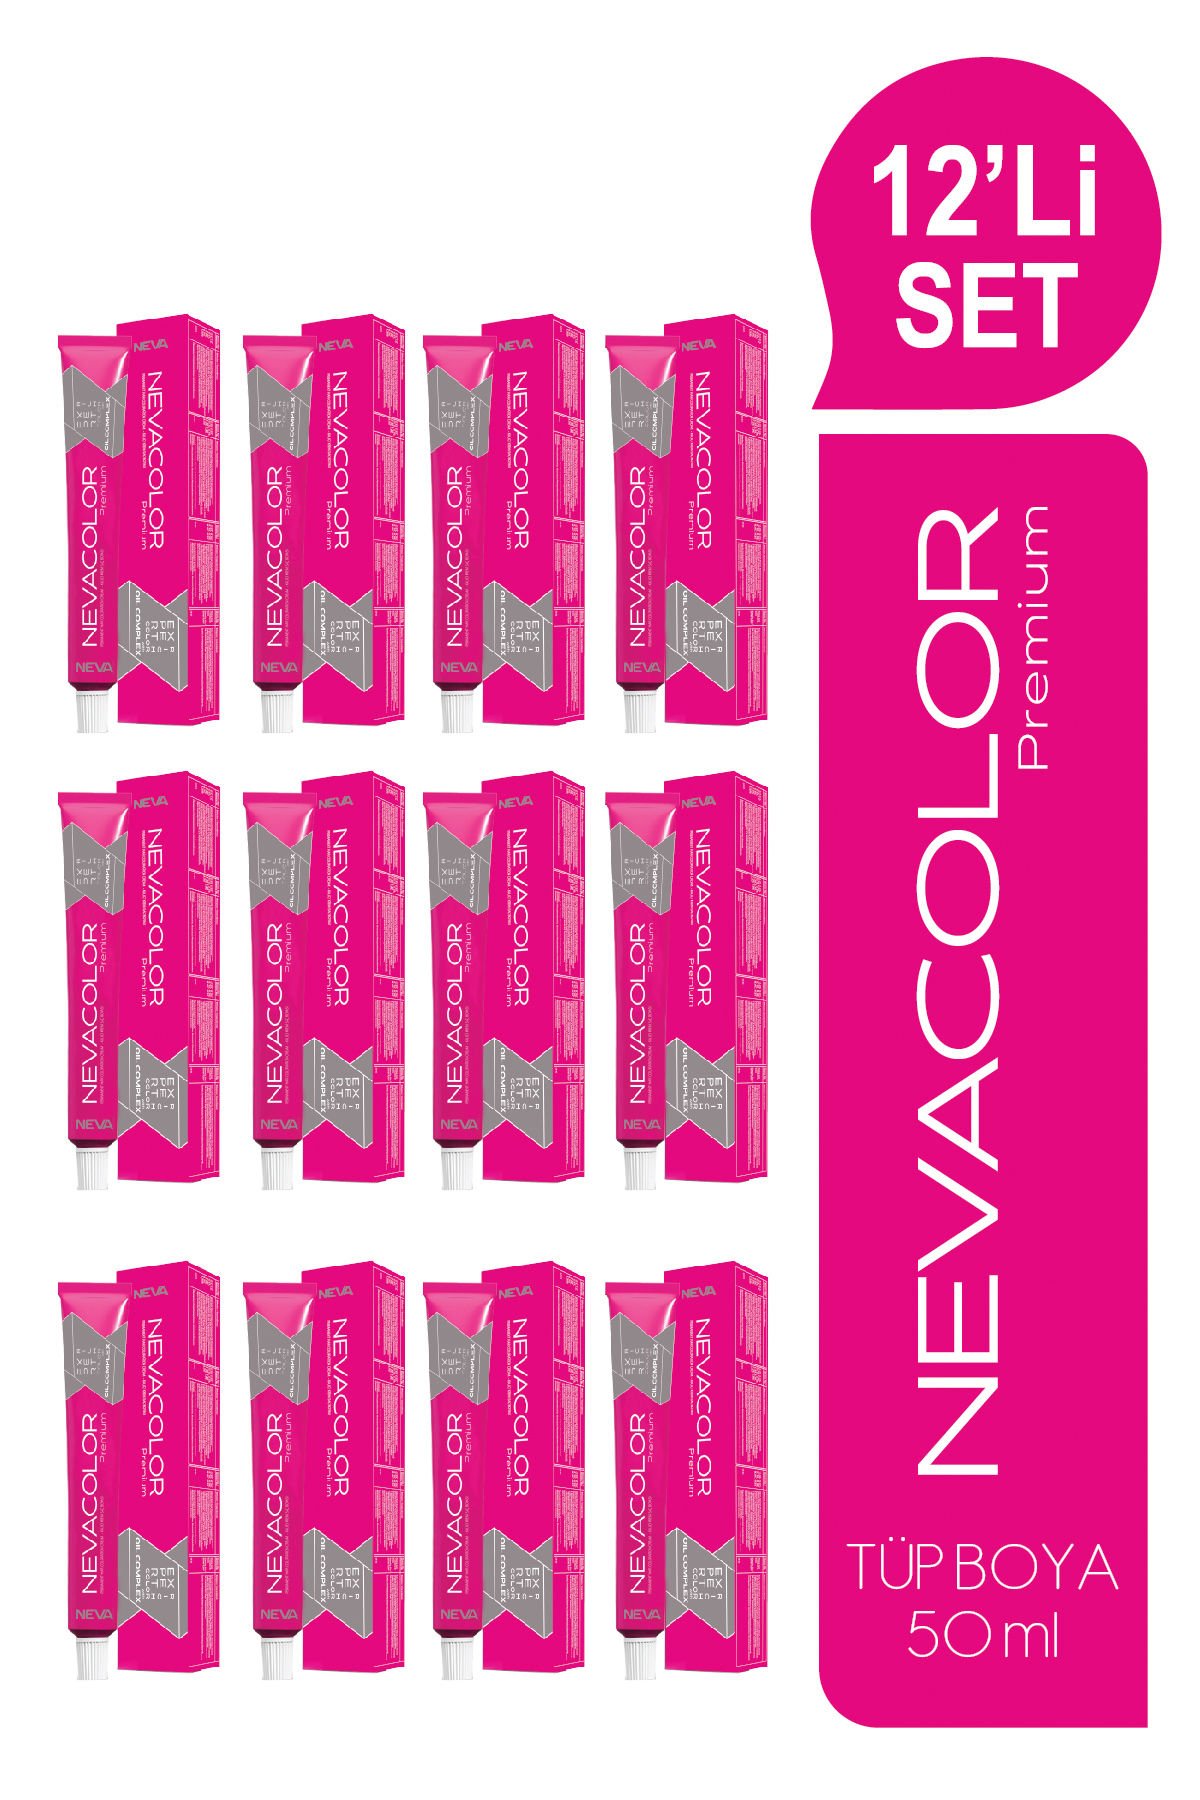 NEVACOLOR Premium 12'Lİ SET  1. SİYAH Kalıcı Krem Saç Boyası (50ml x 12 adet)